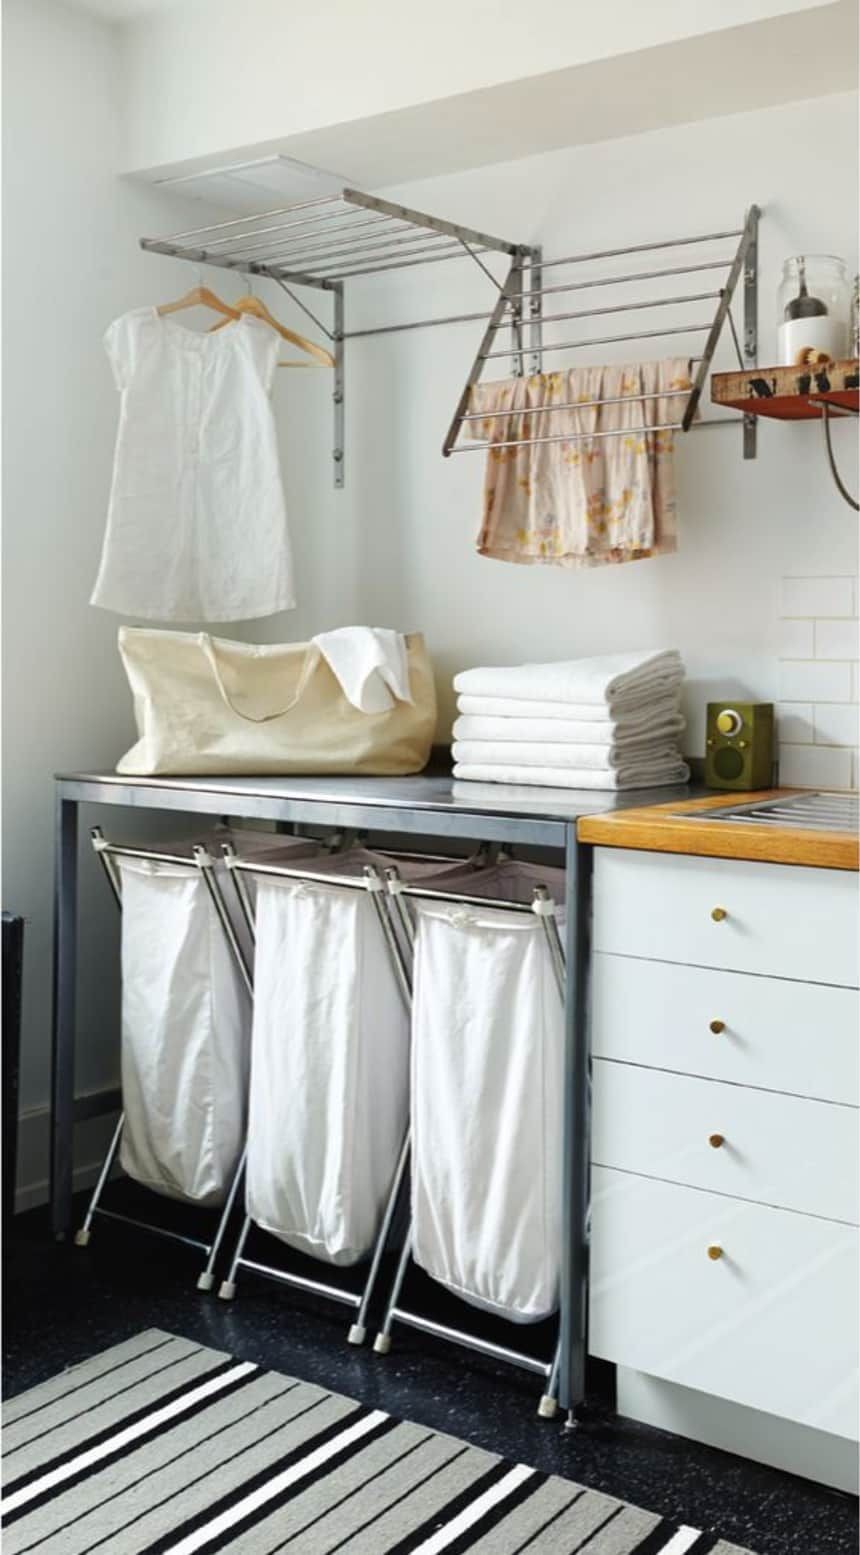 Móveis para lavanderia: 8 ideias para equipar a sua (Foto: reprodução)